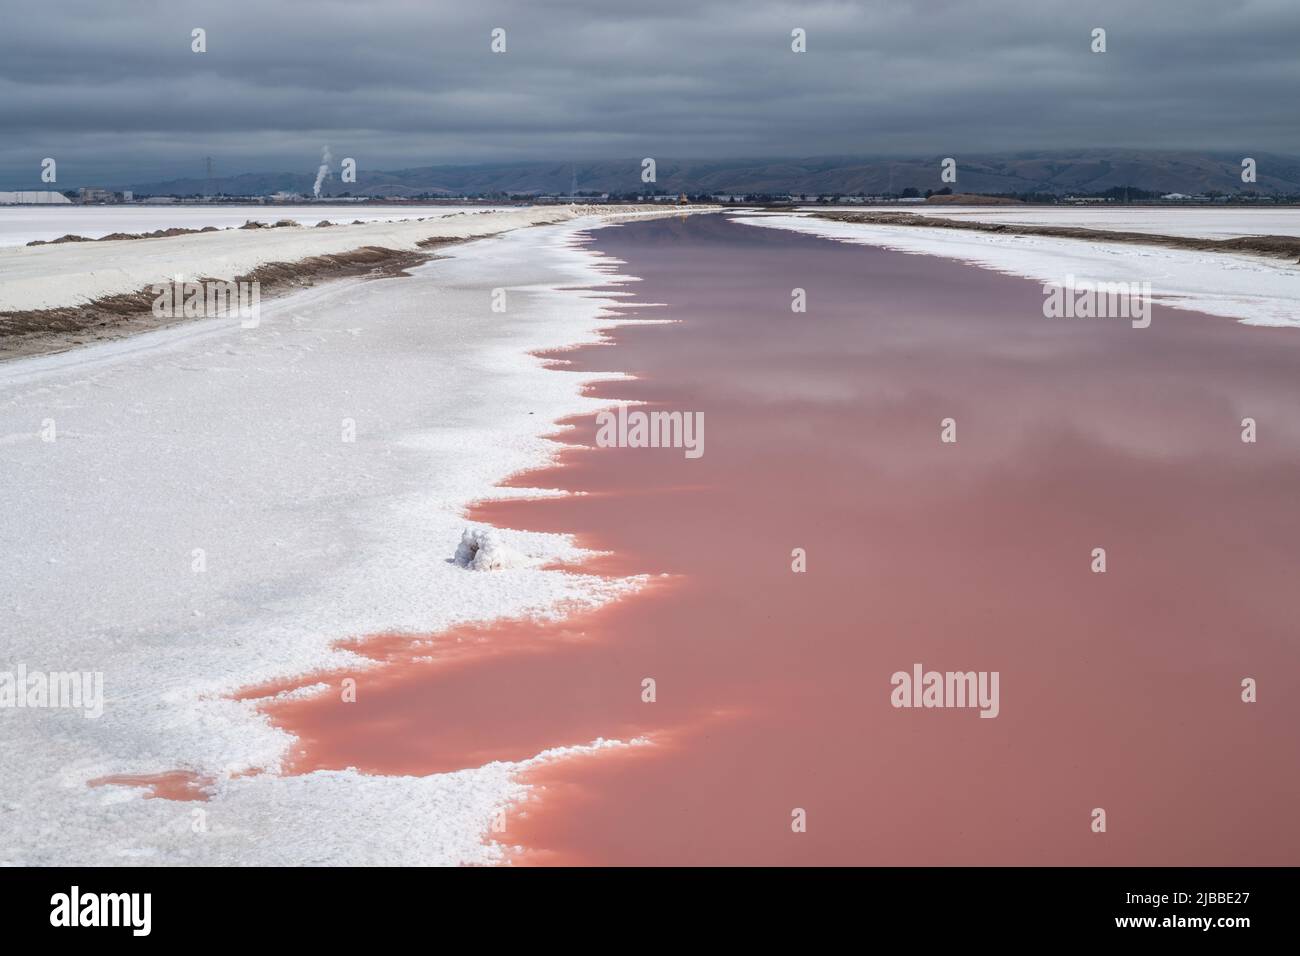 Die wunderschöne Landschaft mit Wasser in Salzteichen, die aufgrund von Dunaliella salina einen rosa Farbton annehmen. Stockfoto